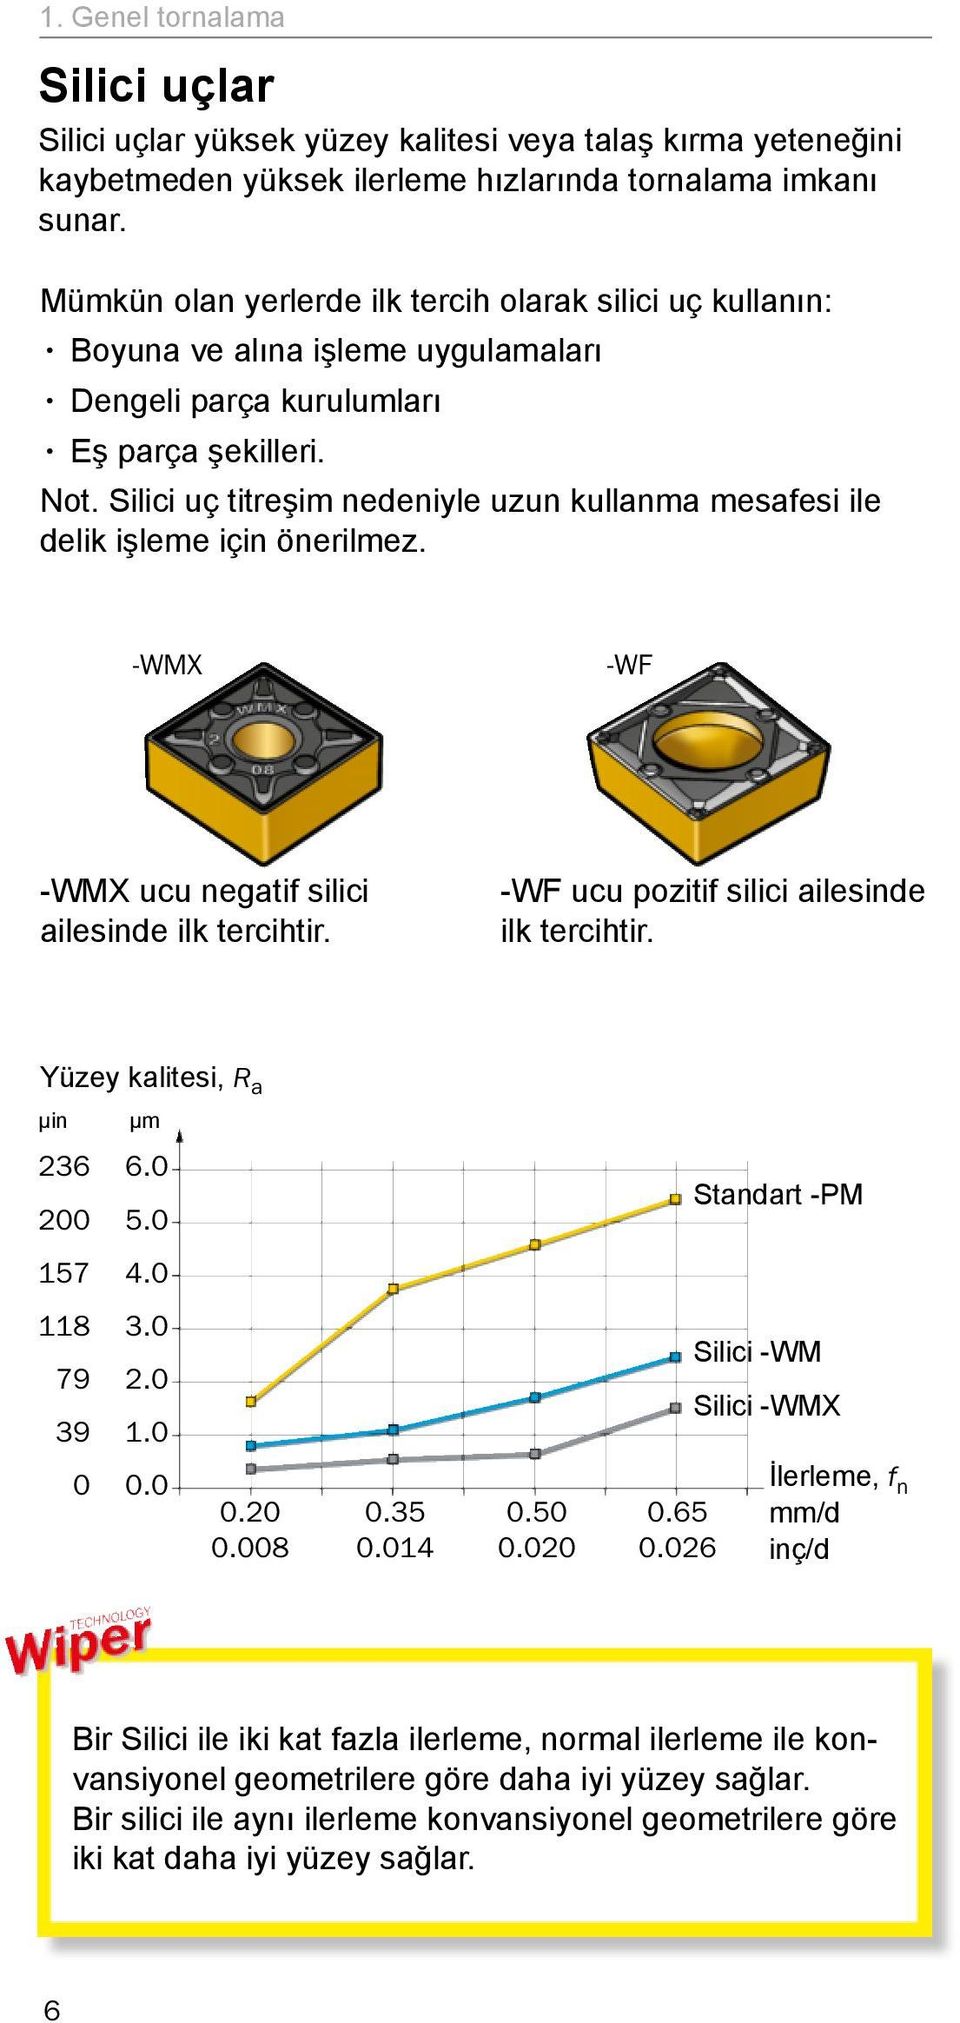 Silici uç titreşim nedeniyle uzun kullanma mesafesi ile delik işleme için önerilmez. -WMX -WF -WMX ucu negatif silici ailesinde ilk tercihtir. -WF ucu pozitif silici ailesinde ilk tercihtir.